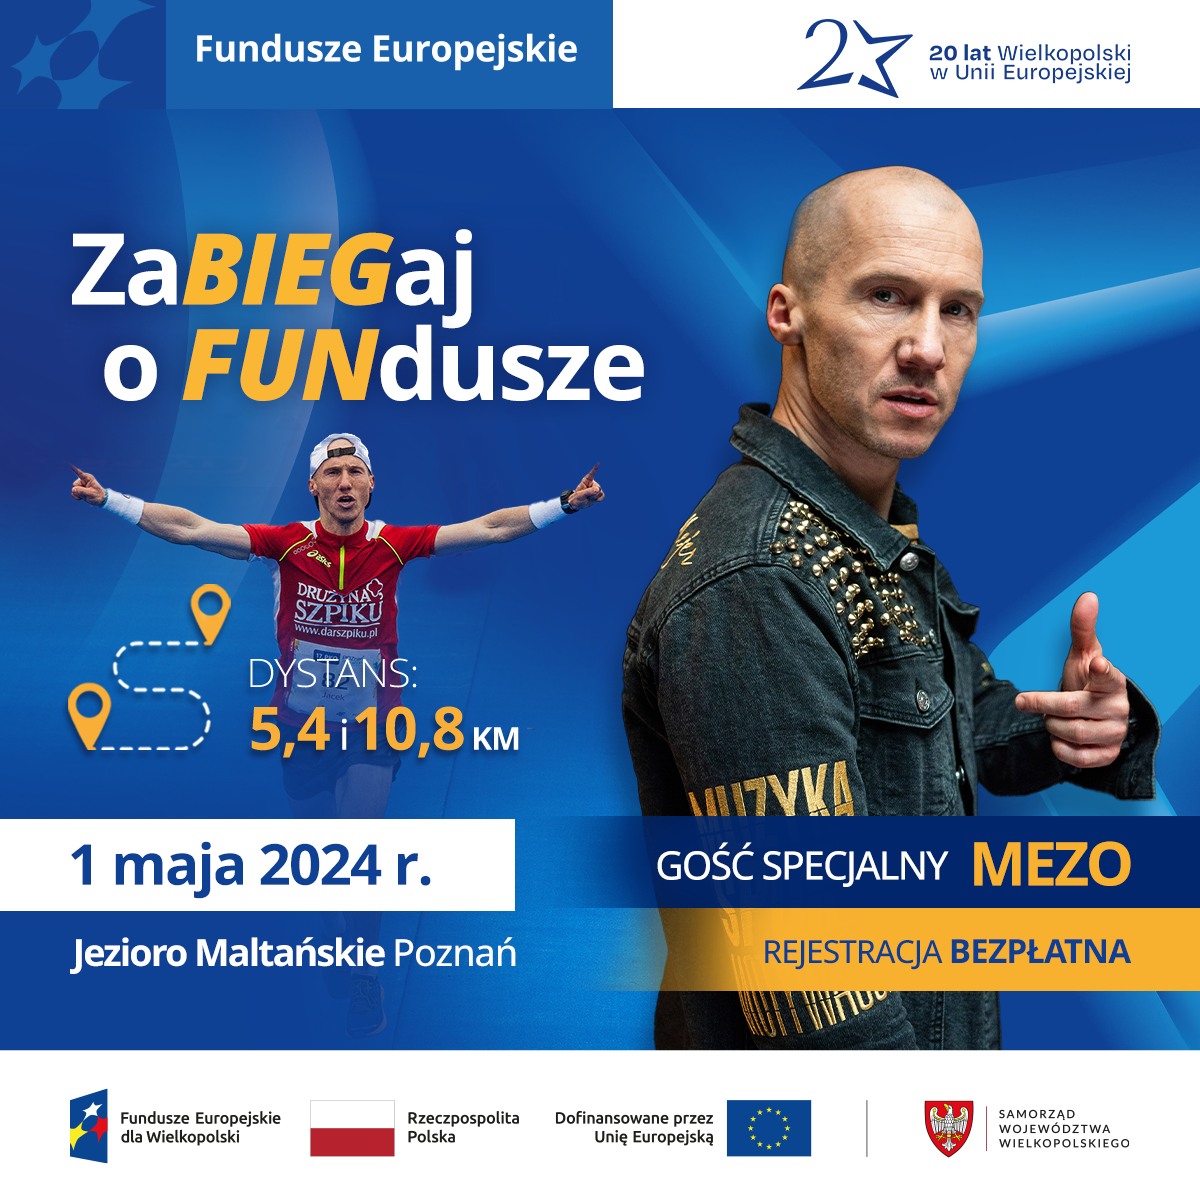 Plakat wydarzenia pod nazwą "ZaBIEGaj o FUNdusze" na którym znajduje się data i lokalizacja biegu. Grafika przedstawia rapera MEZO - gwiazdę imprezy, która po biegu da koncert.